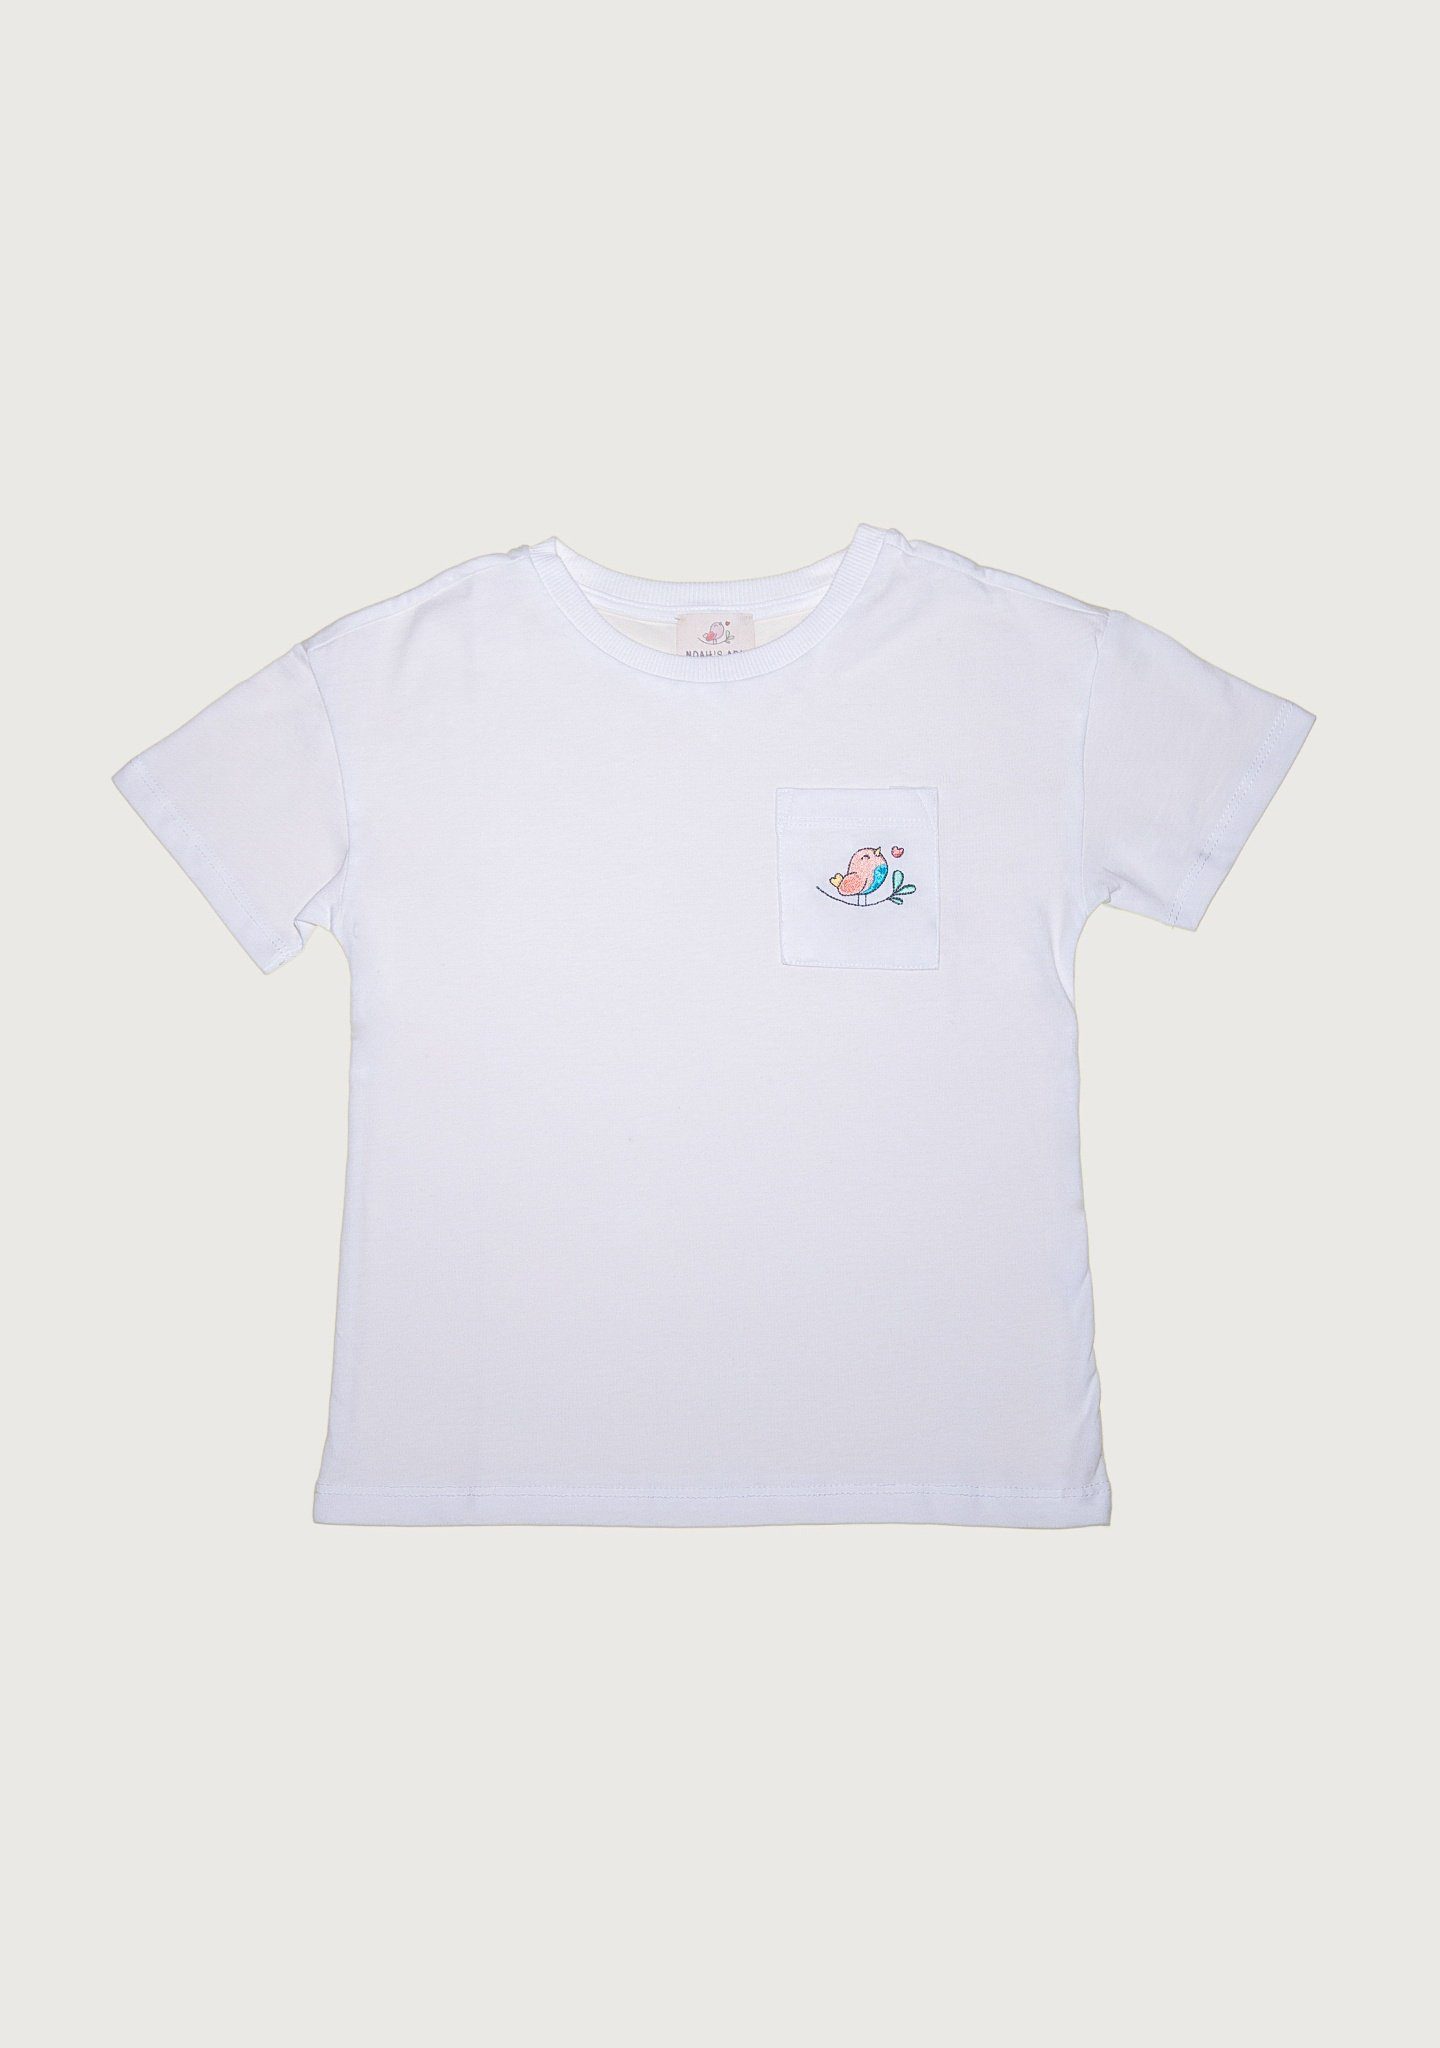 Ecru mit Rundhalsausschnitt, in Baumwolle Noah's aus Unifarbe, unisex Kinder Shirt Brusttasche T-Shirt für aus Ark Baumwolle, mit